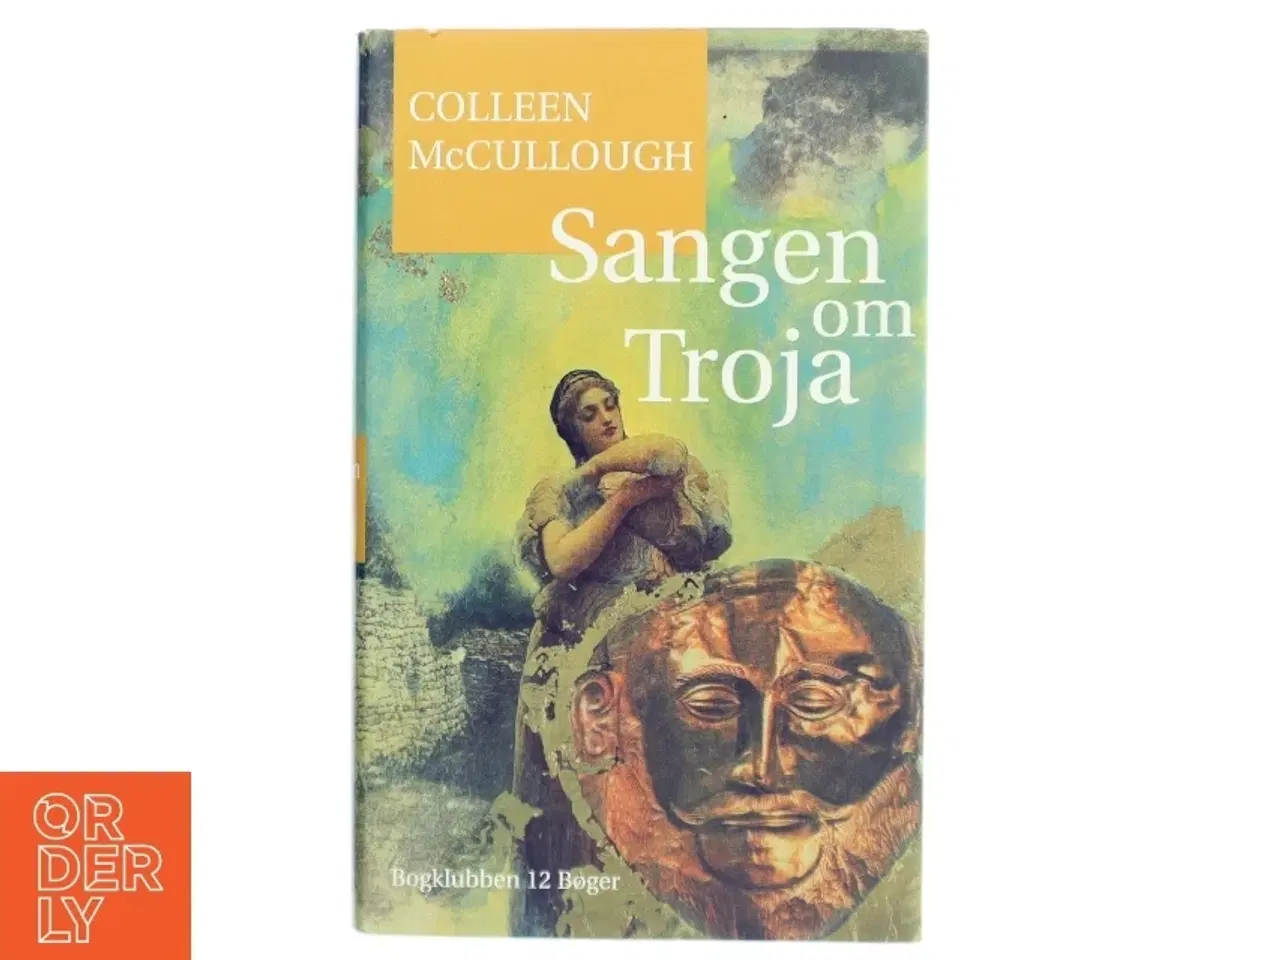 Billede 1 - 'Sangen om Troja' af Colleen McCullough (bog) fra Bogklubben 12 Bøger